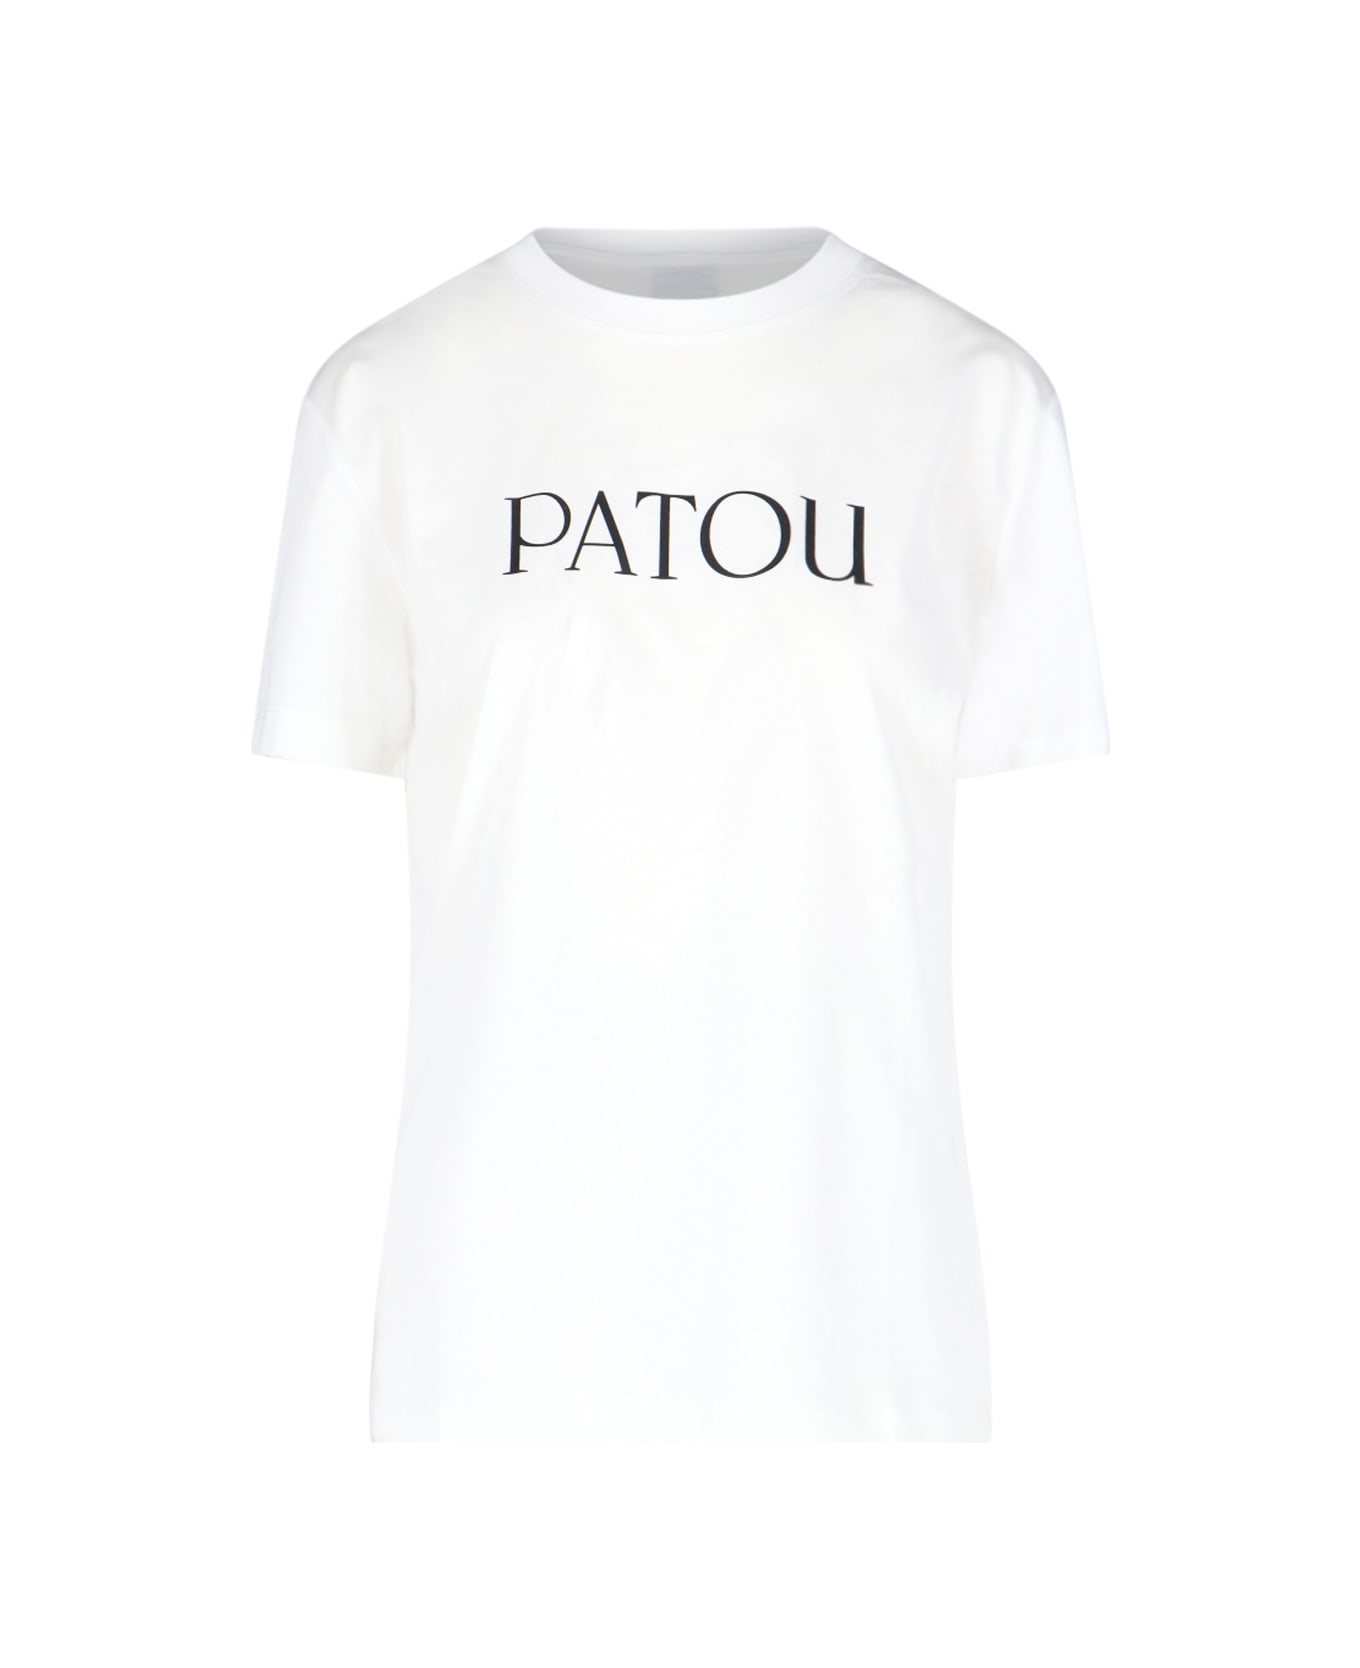 Patou Logo T-shirt - White Tシャツ